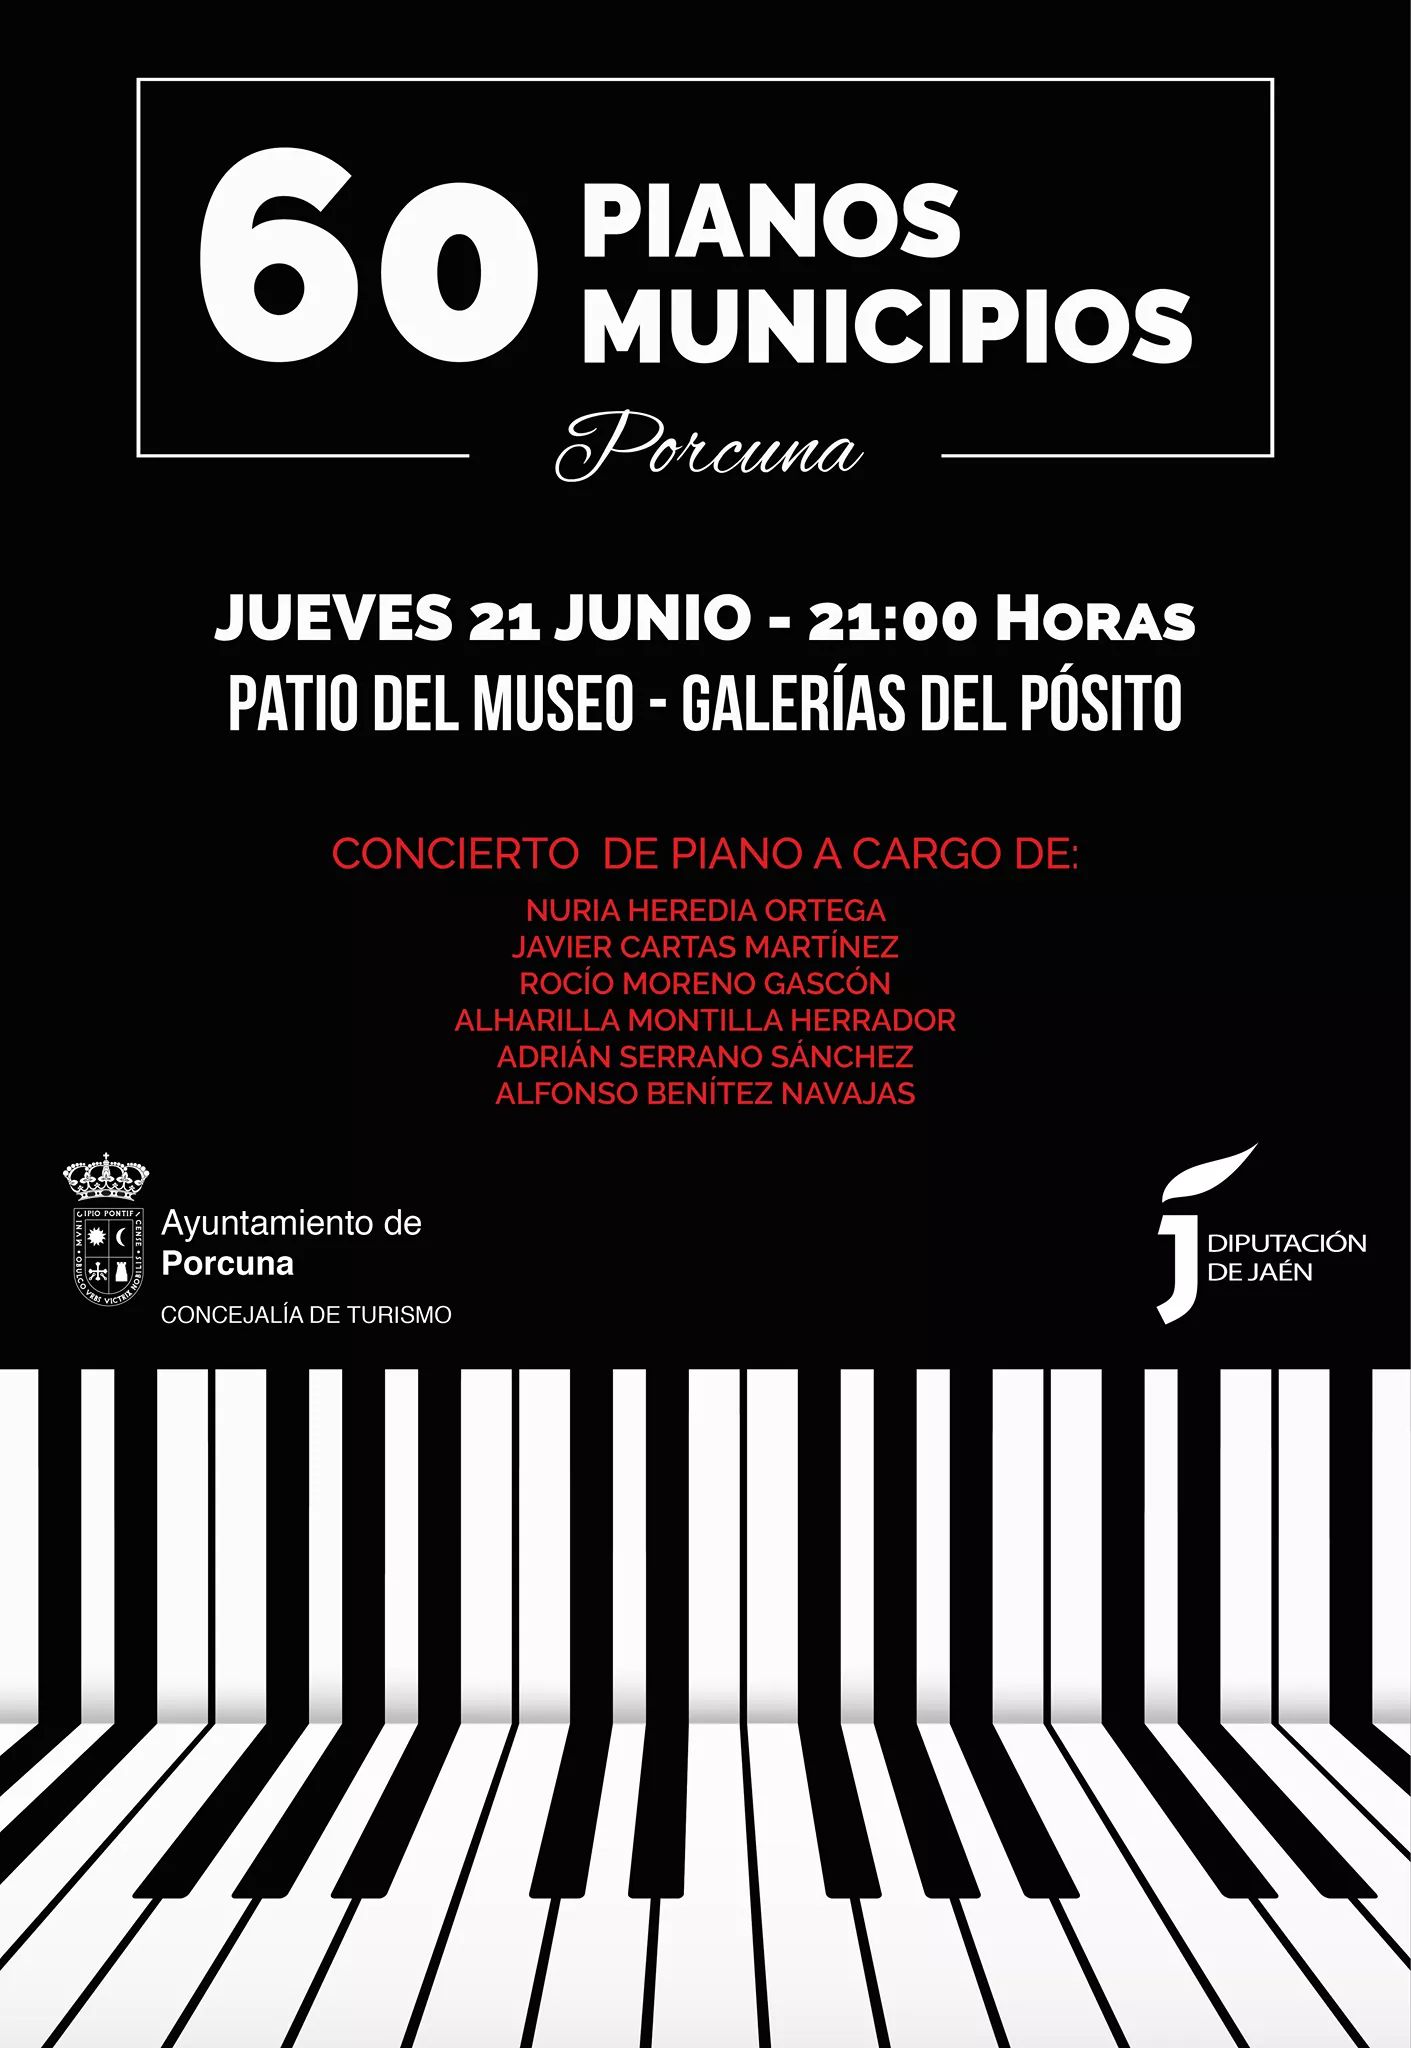 60 Pianos 60 municipios - Porcuna